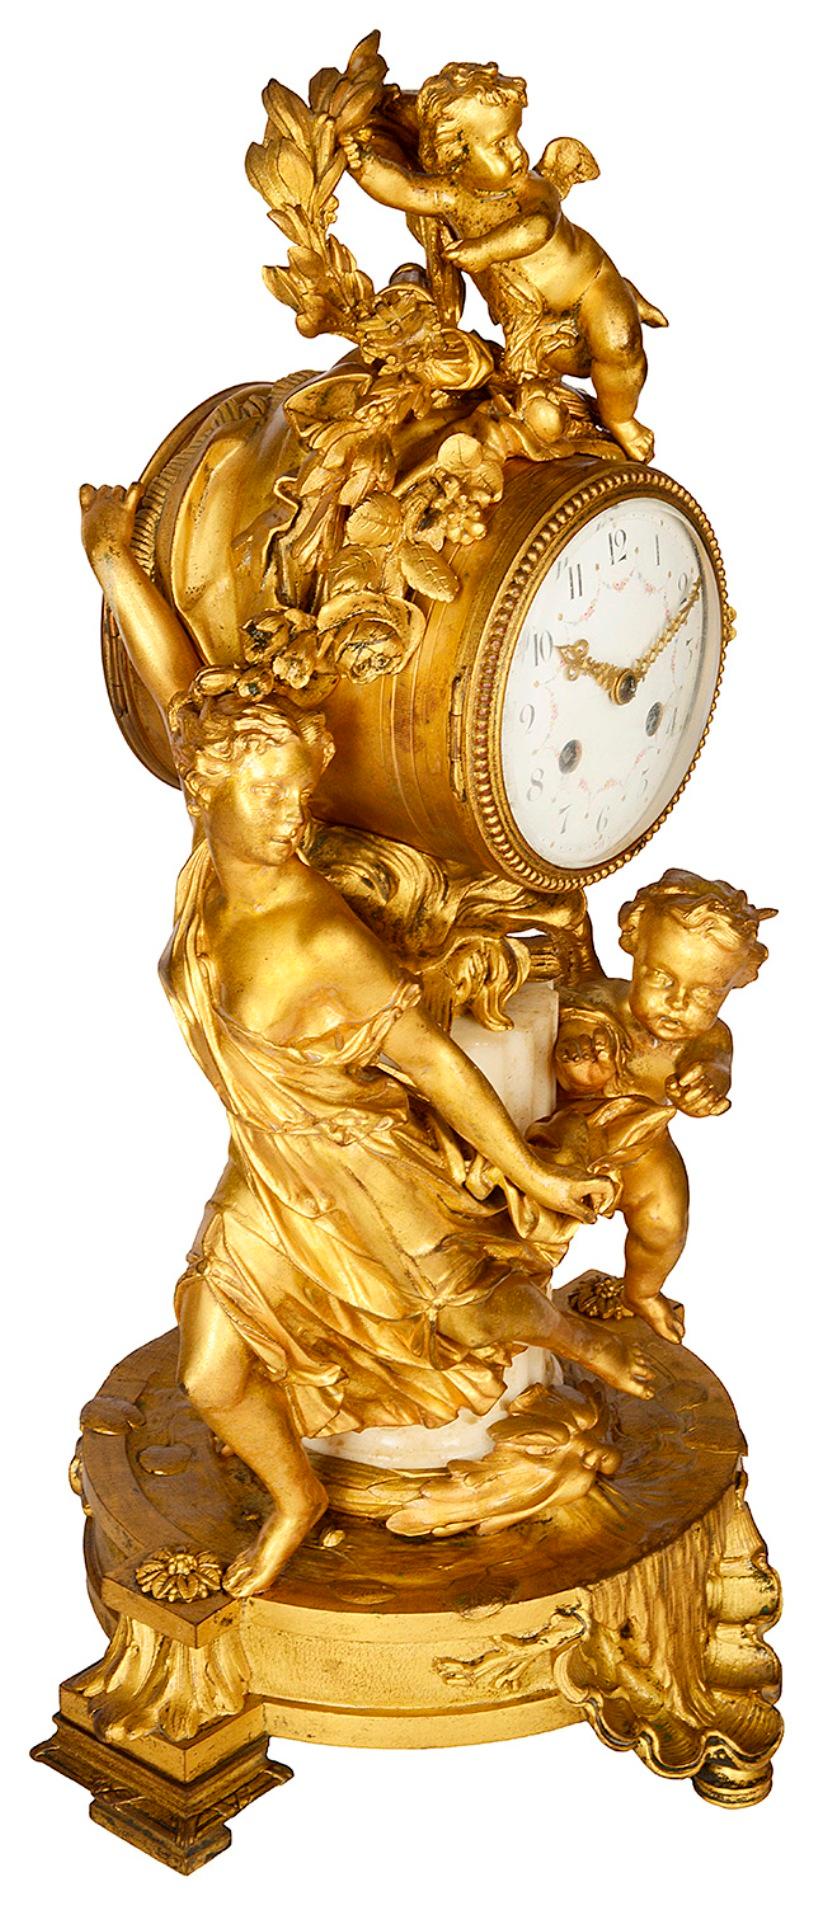 Eine bezaubernde französische Kaminsimsuhr aus vergoldetem Ormolu und Marmor aus dem späten 19. Jahrhundert, die spielende Putten darstellt, von denen eine ein junges Mädchen verfolgt, während sich die andere zwischen einem Kranz und Laub versteckt.